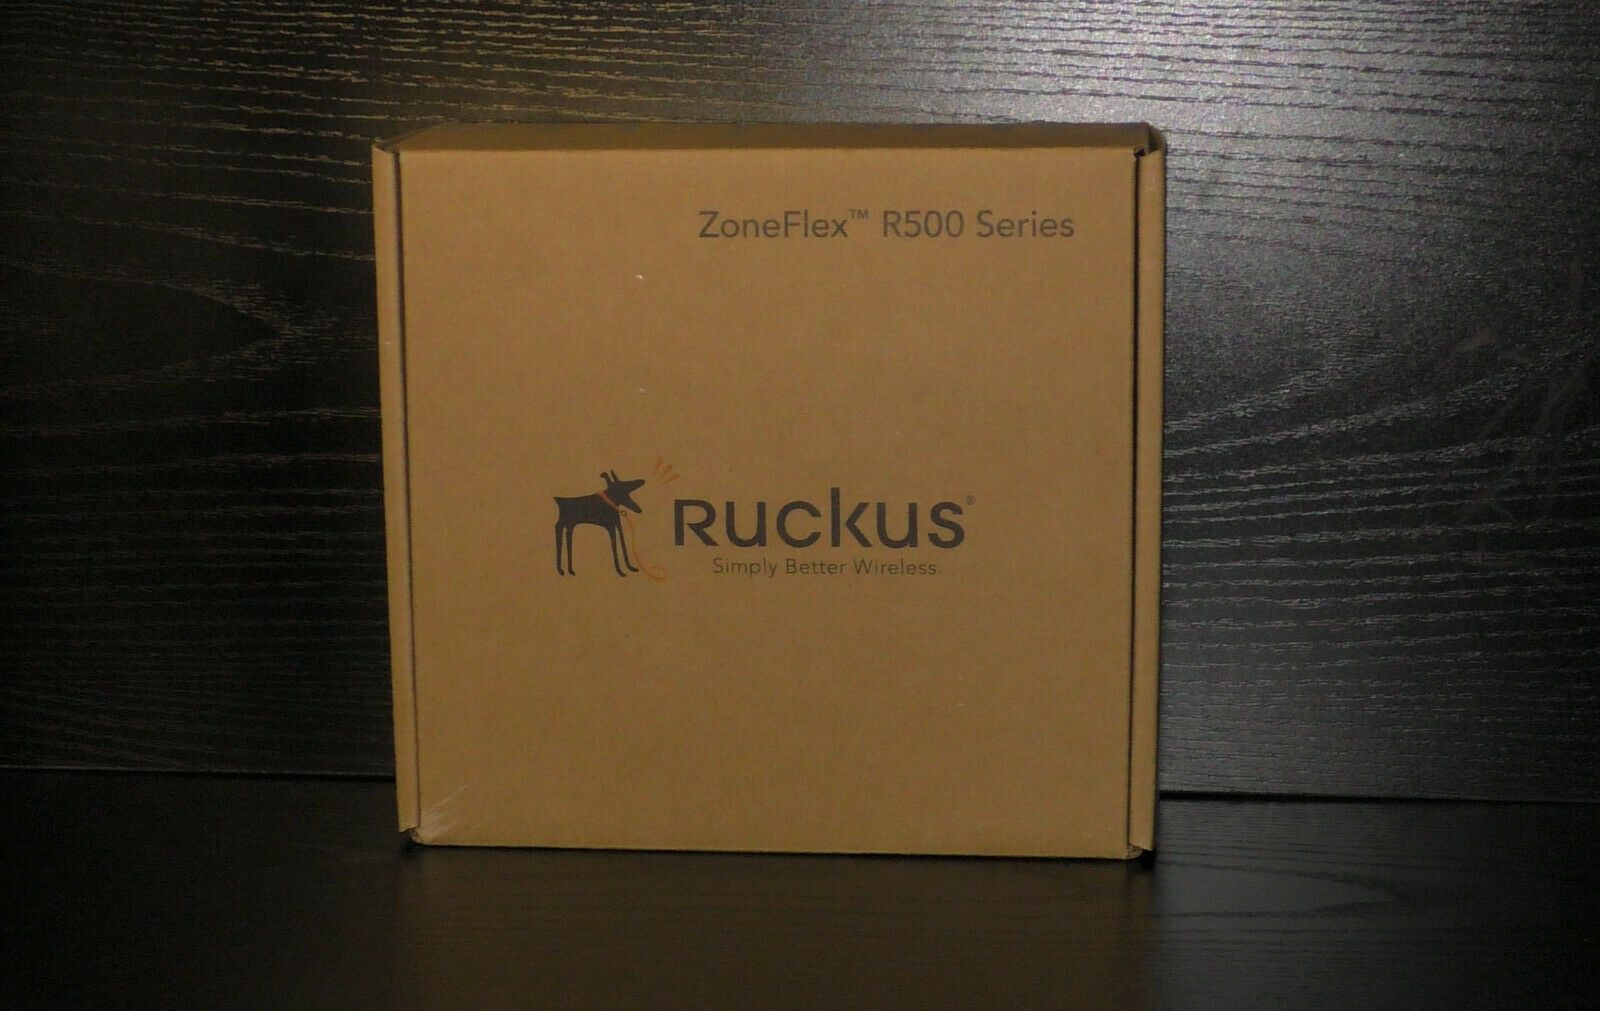 Ruckus ZoneFlex R500 Wireless Access Point White 901-R500-US00 Zone Flex.